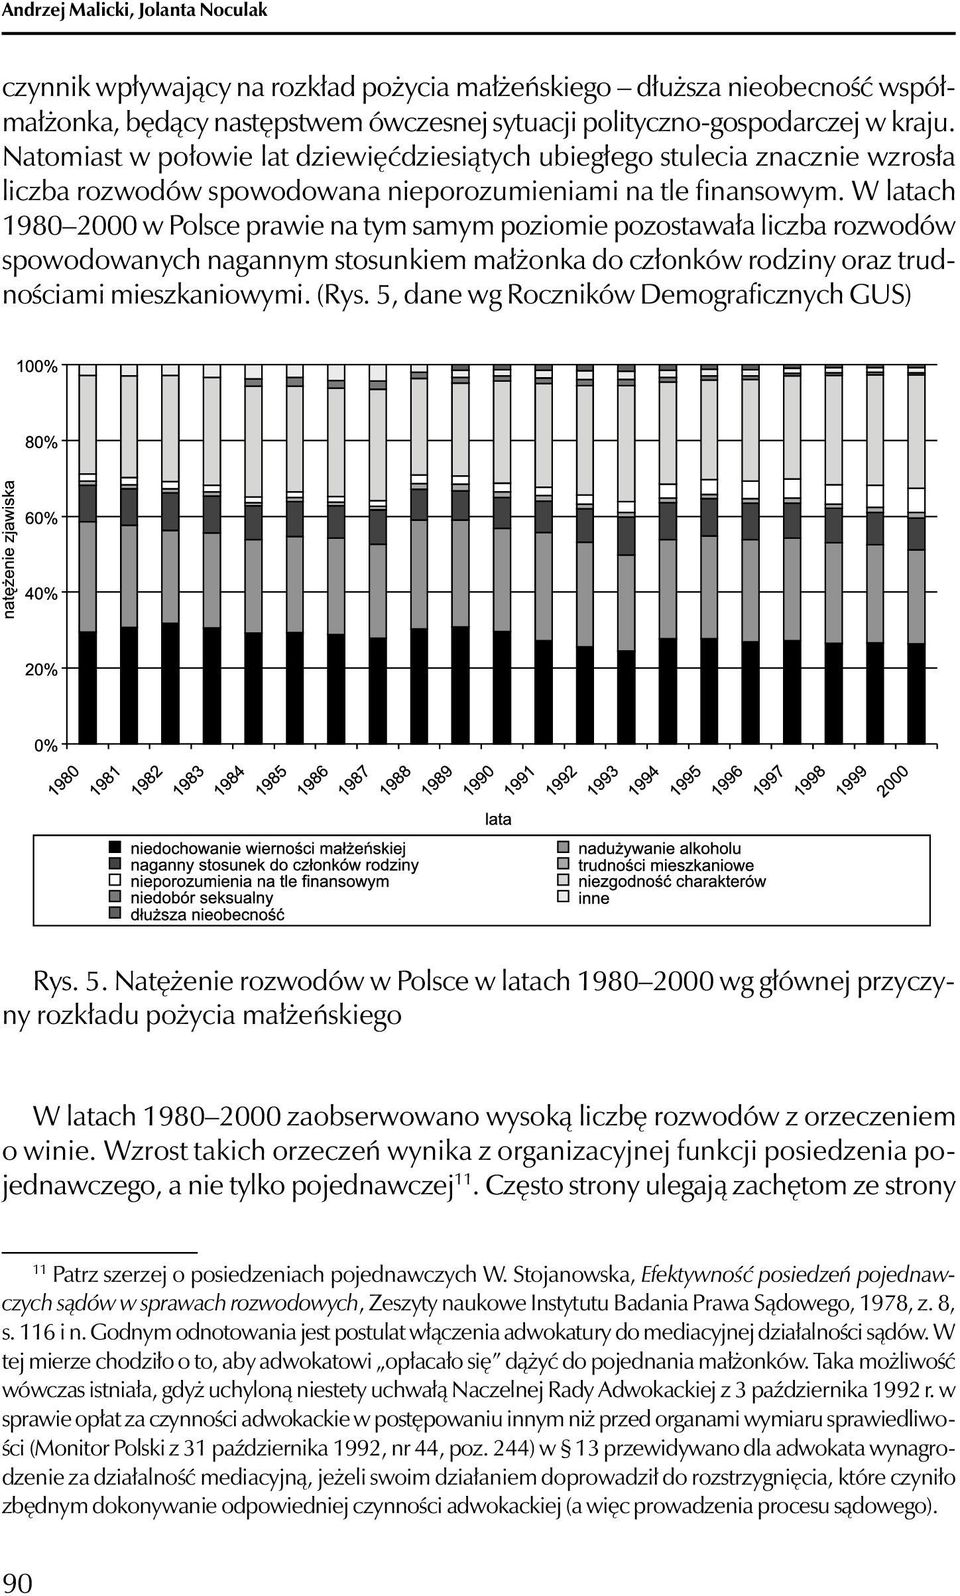 W latach 1980 2000 w Polsce prawie na tym samym poziomie pozostawała liczba rozwodów spowodowanych nagannym stosunkiem małżonka do członków rodziny oraz trudnościami mieszkaniowymi. (Rys.